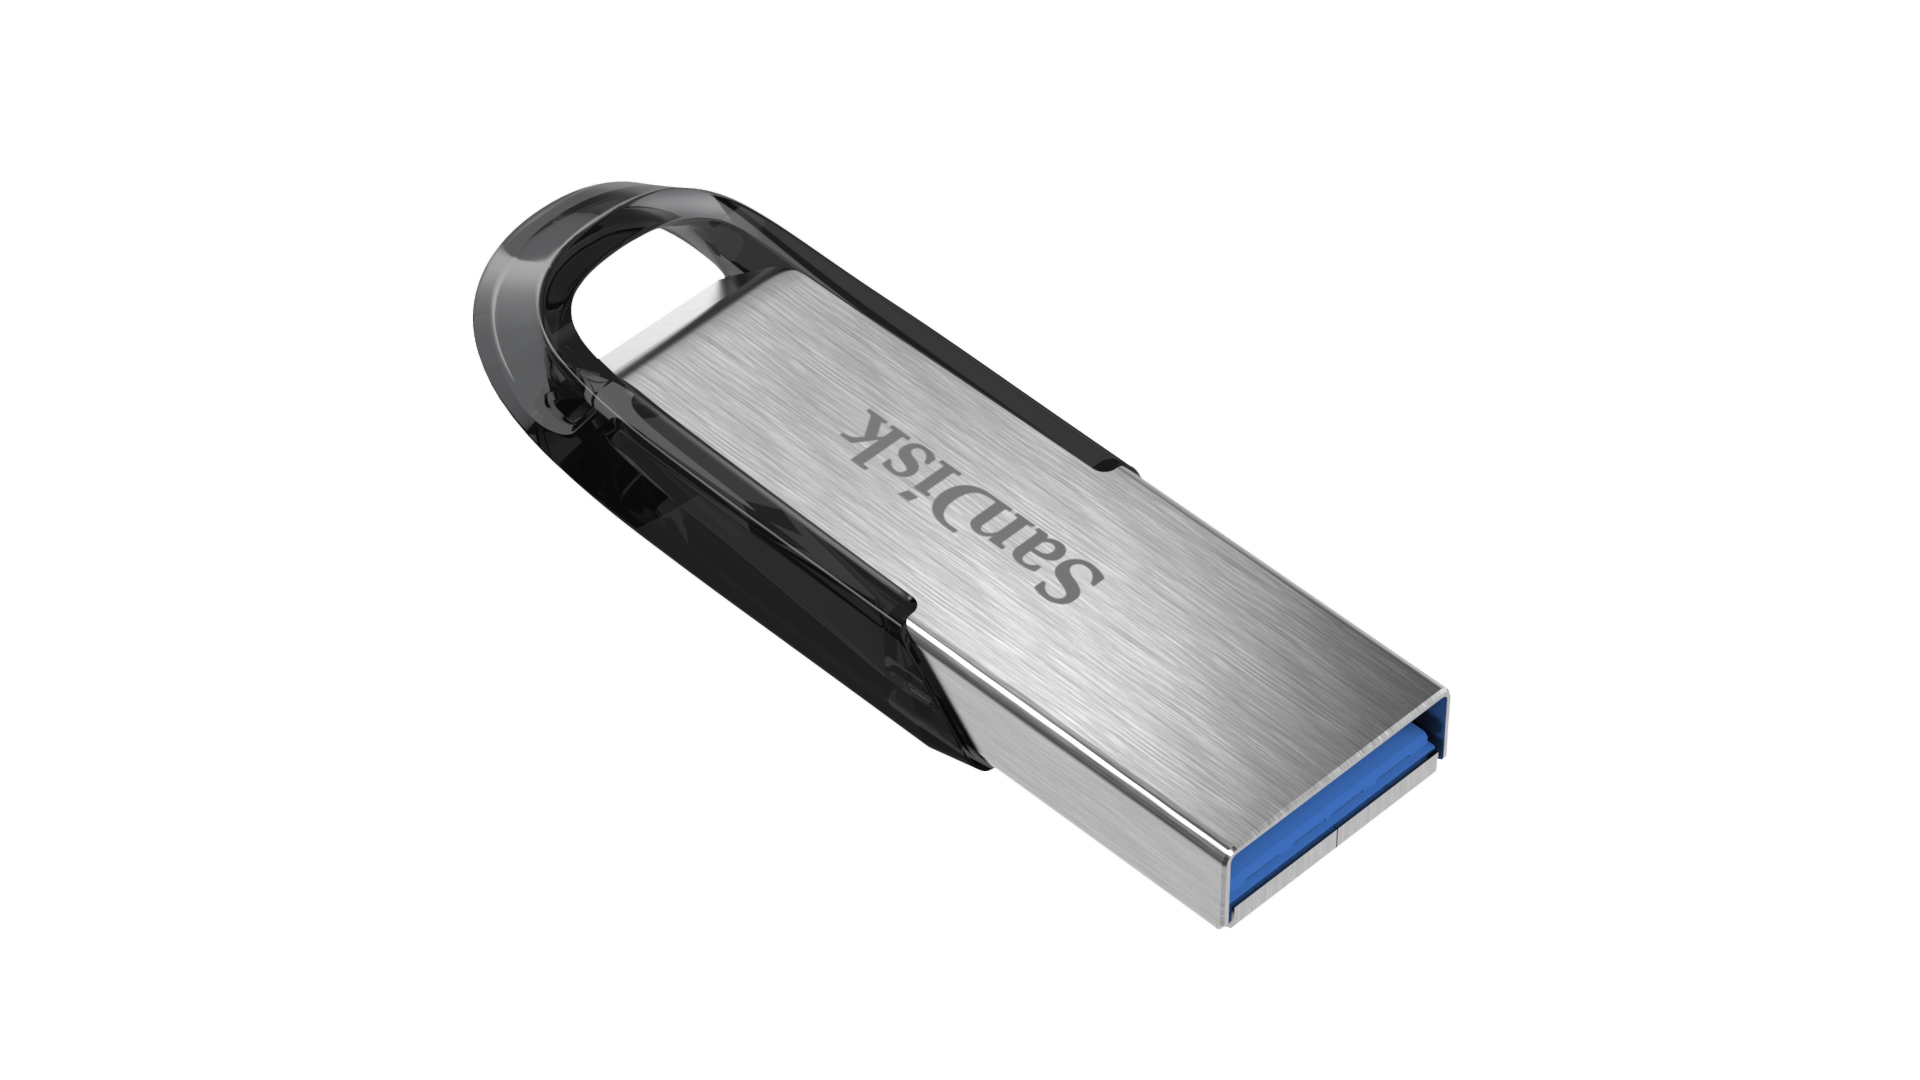 SANDISK HI-SPEED USB 3.0 32GB